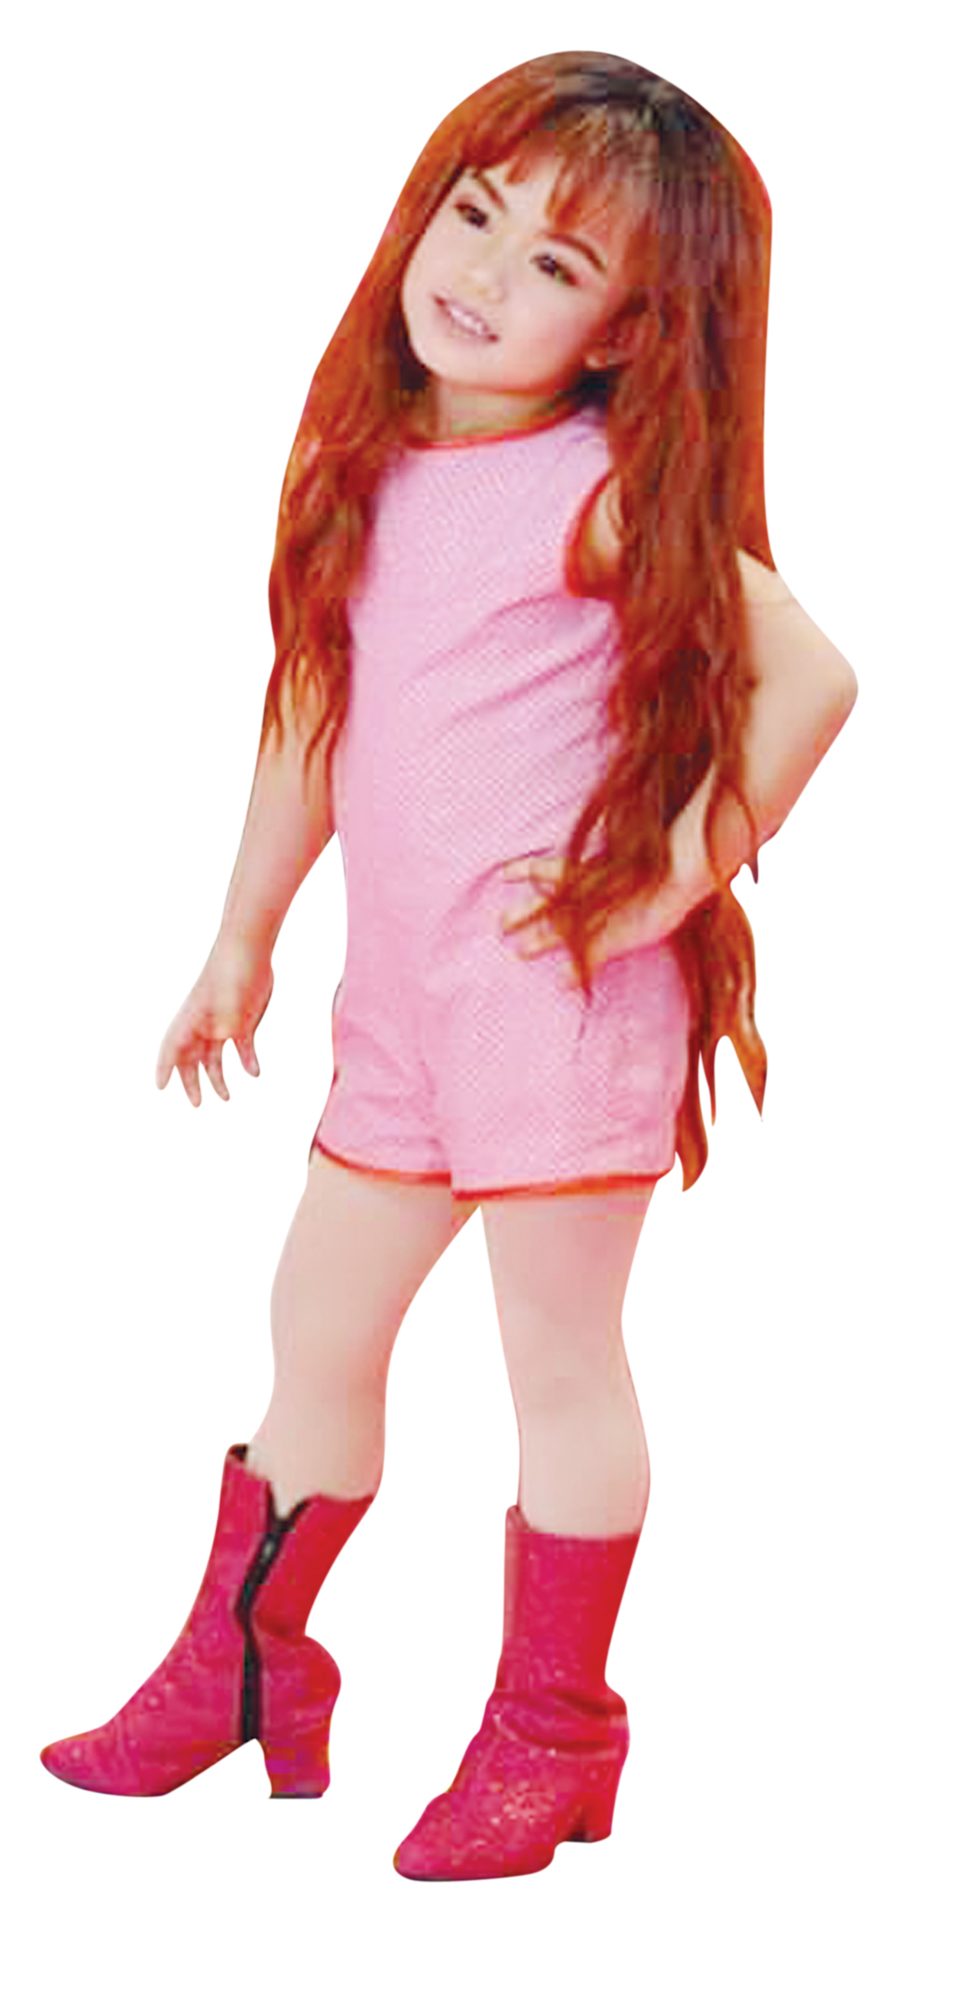 ไอดอลเด็กหญิง 60ปีตุ๊กตาบาร์บี้